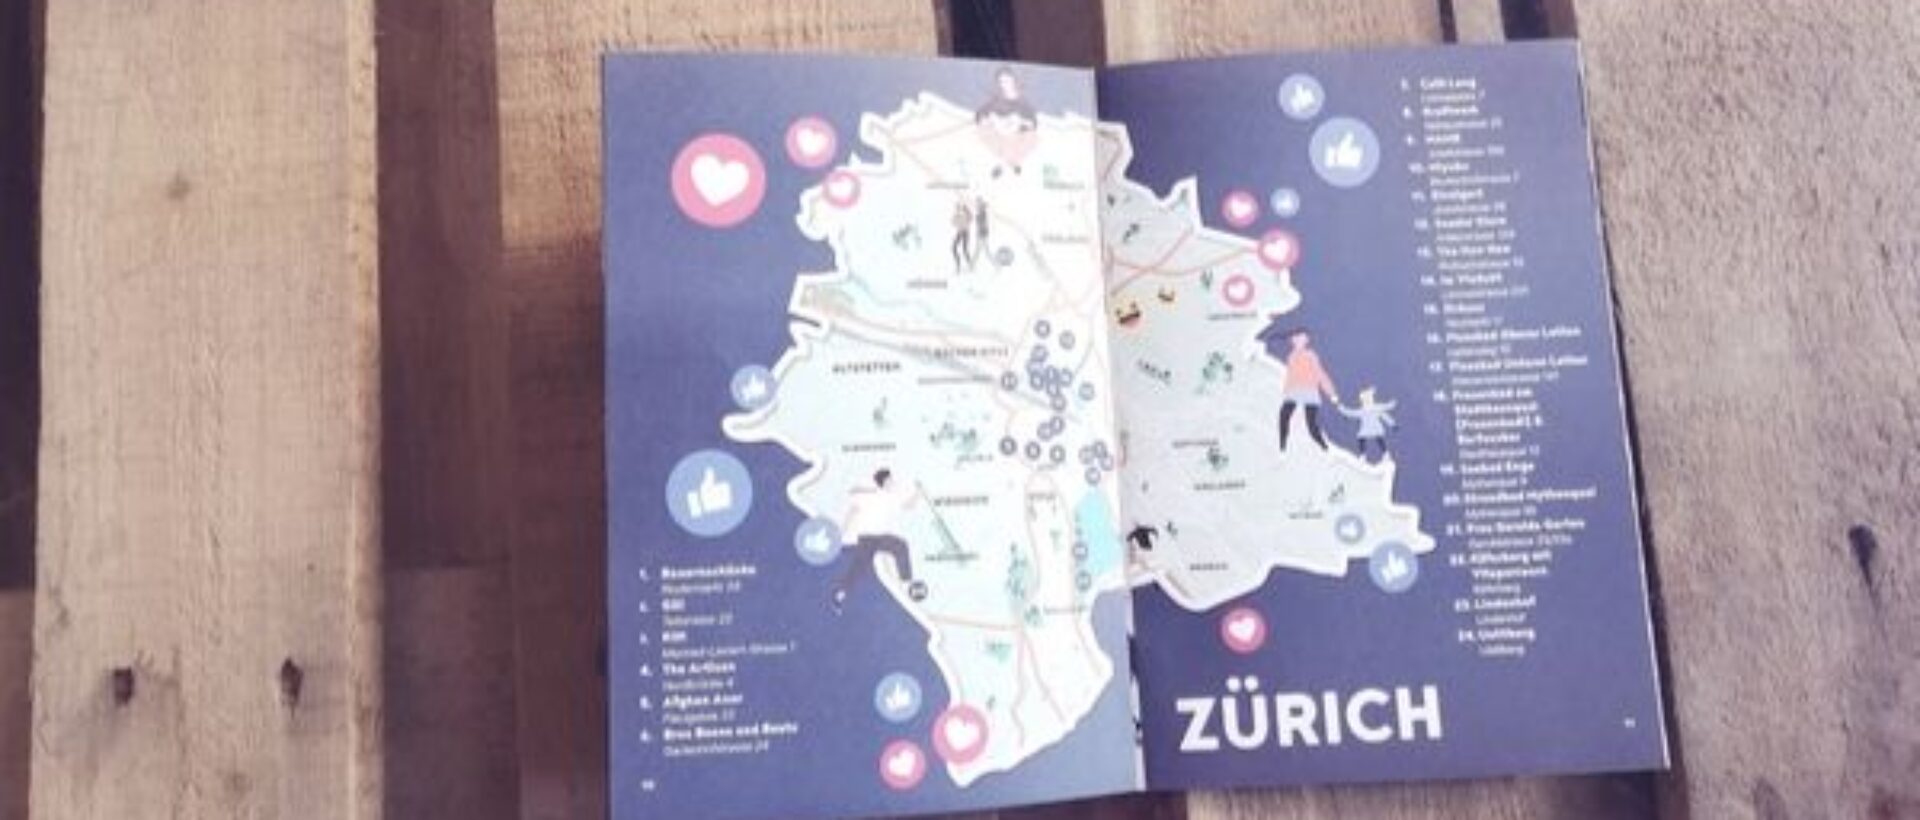 Zürich Community City Guide auf einem Tisch